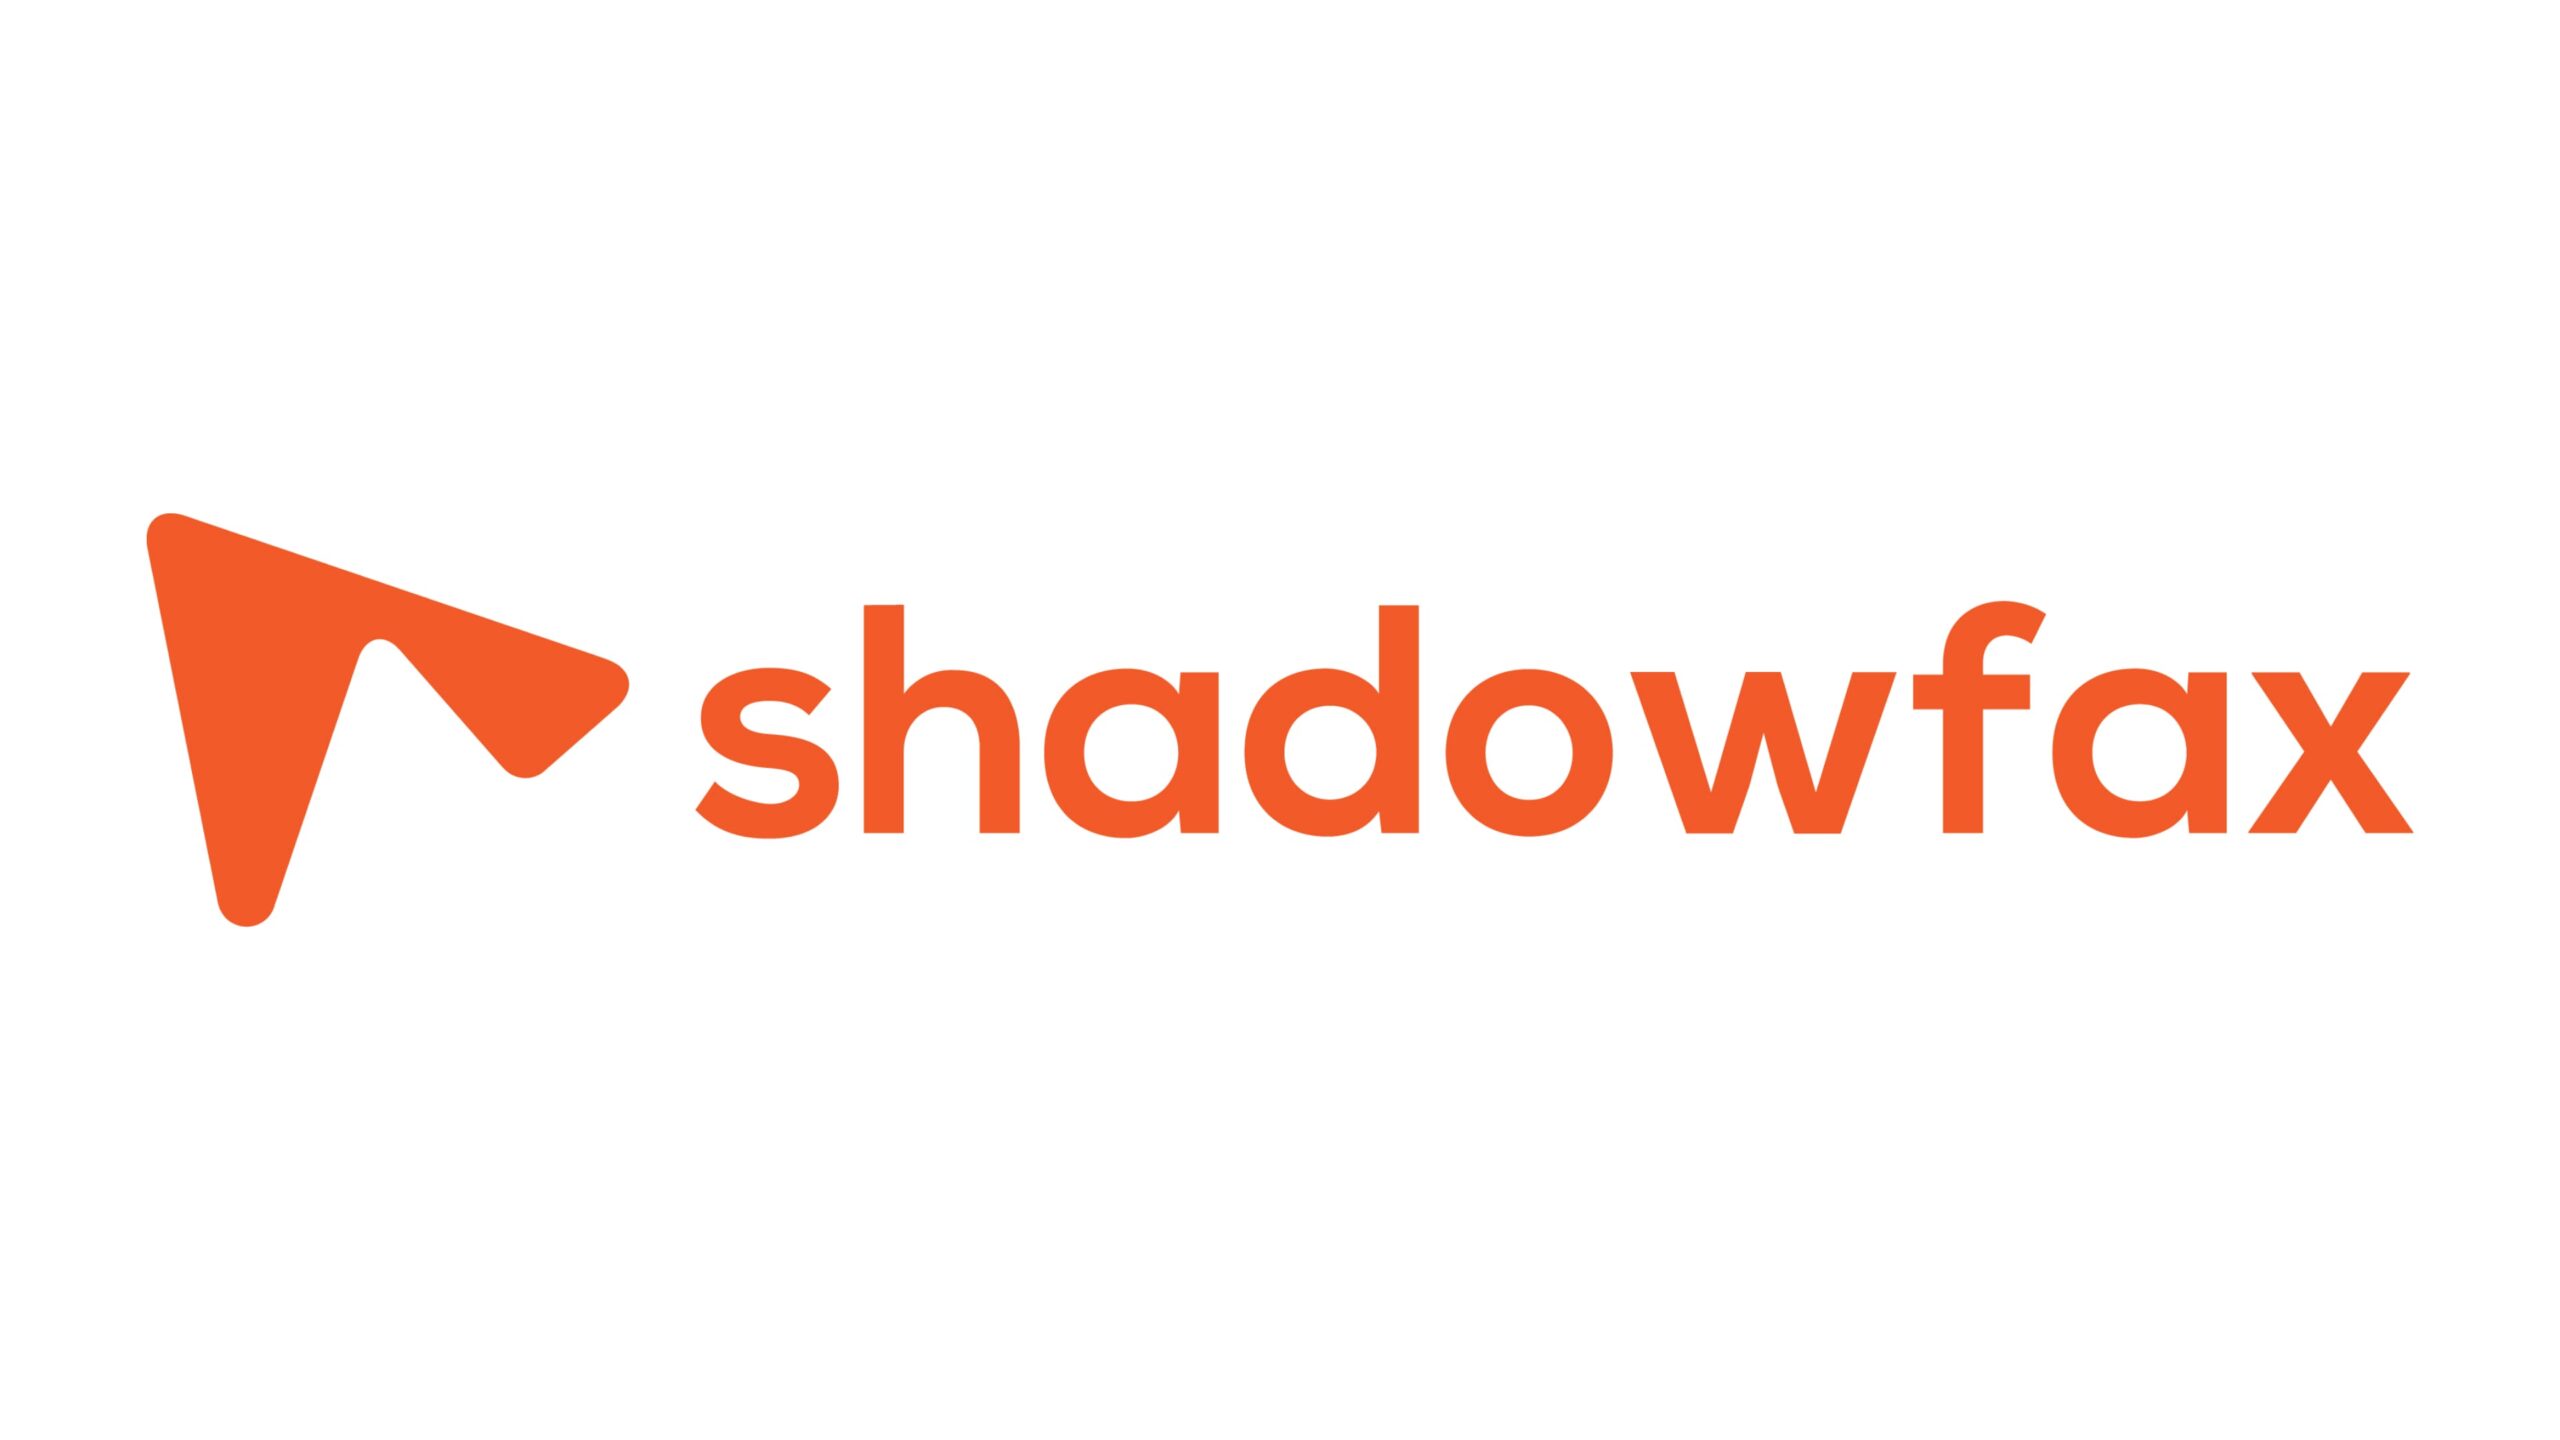 インドの物流スタートアップShadowfaxがTPG NewQuestをリードとする約6,000万ドルの資金調達ラウンドの最終調整中——累積調達額は約1億2,100万ドルへ